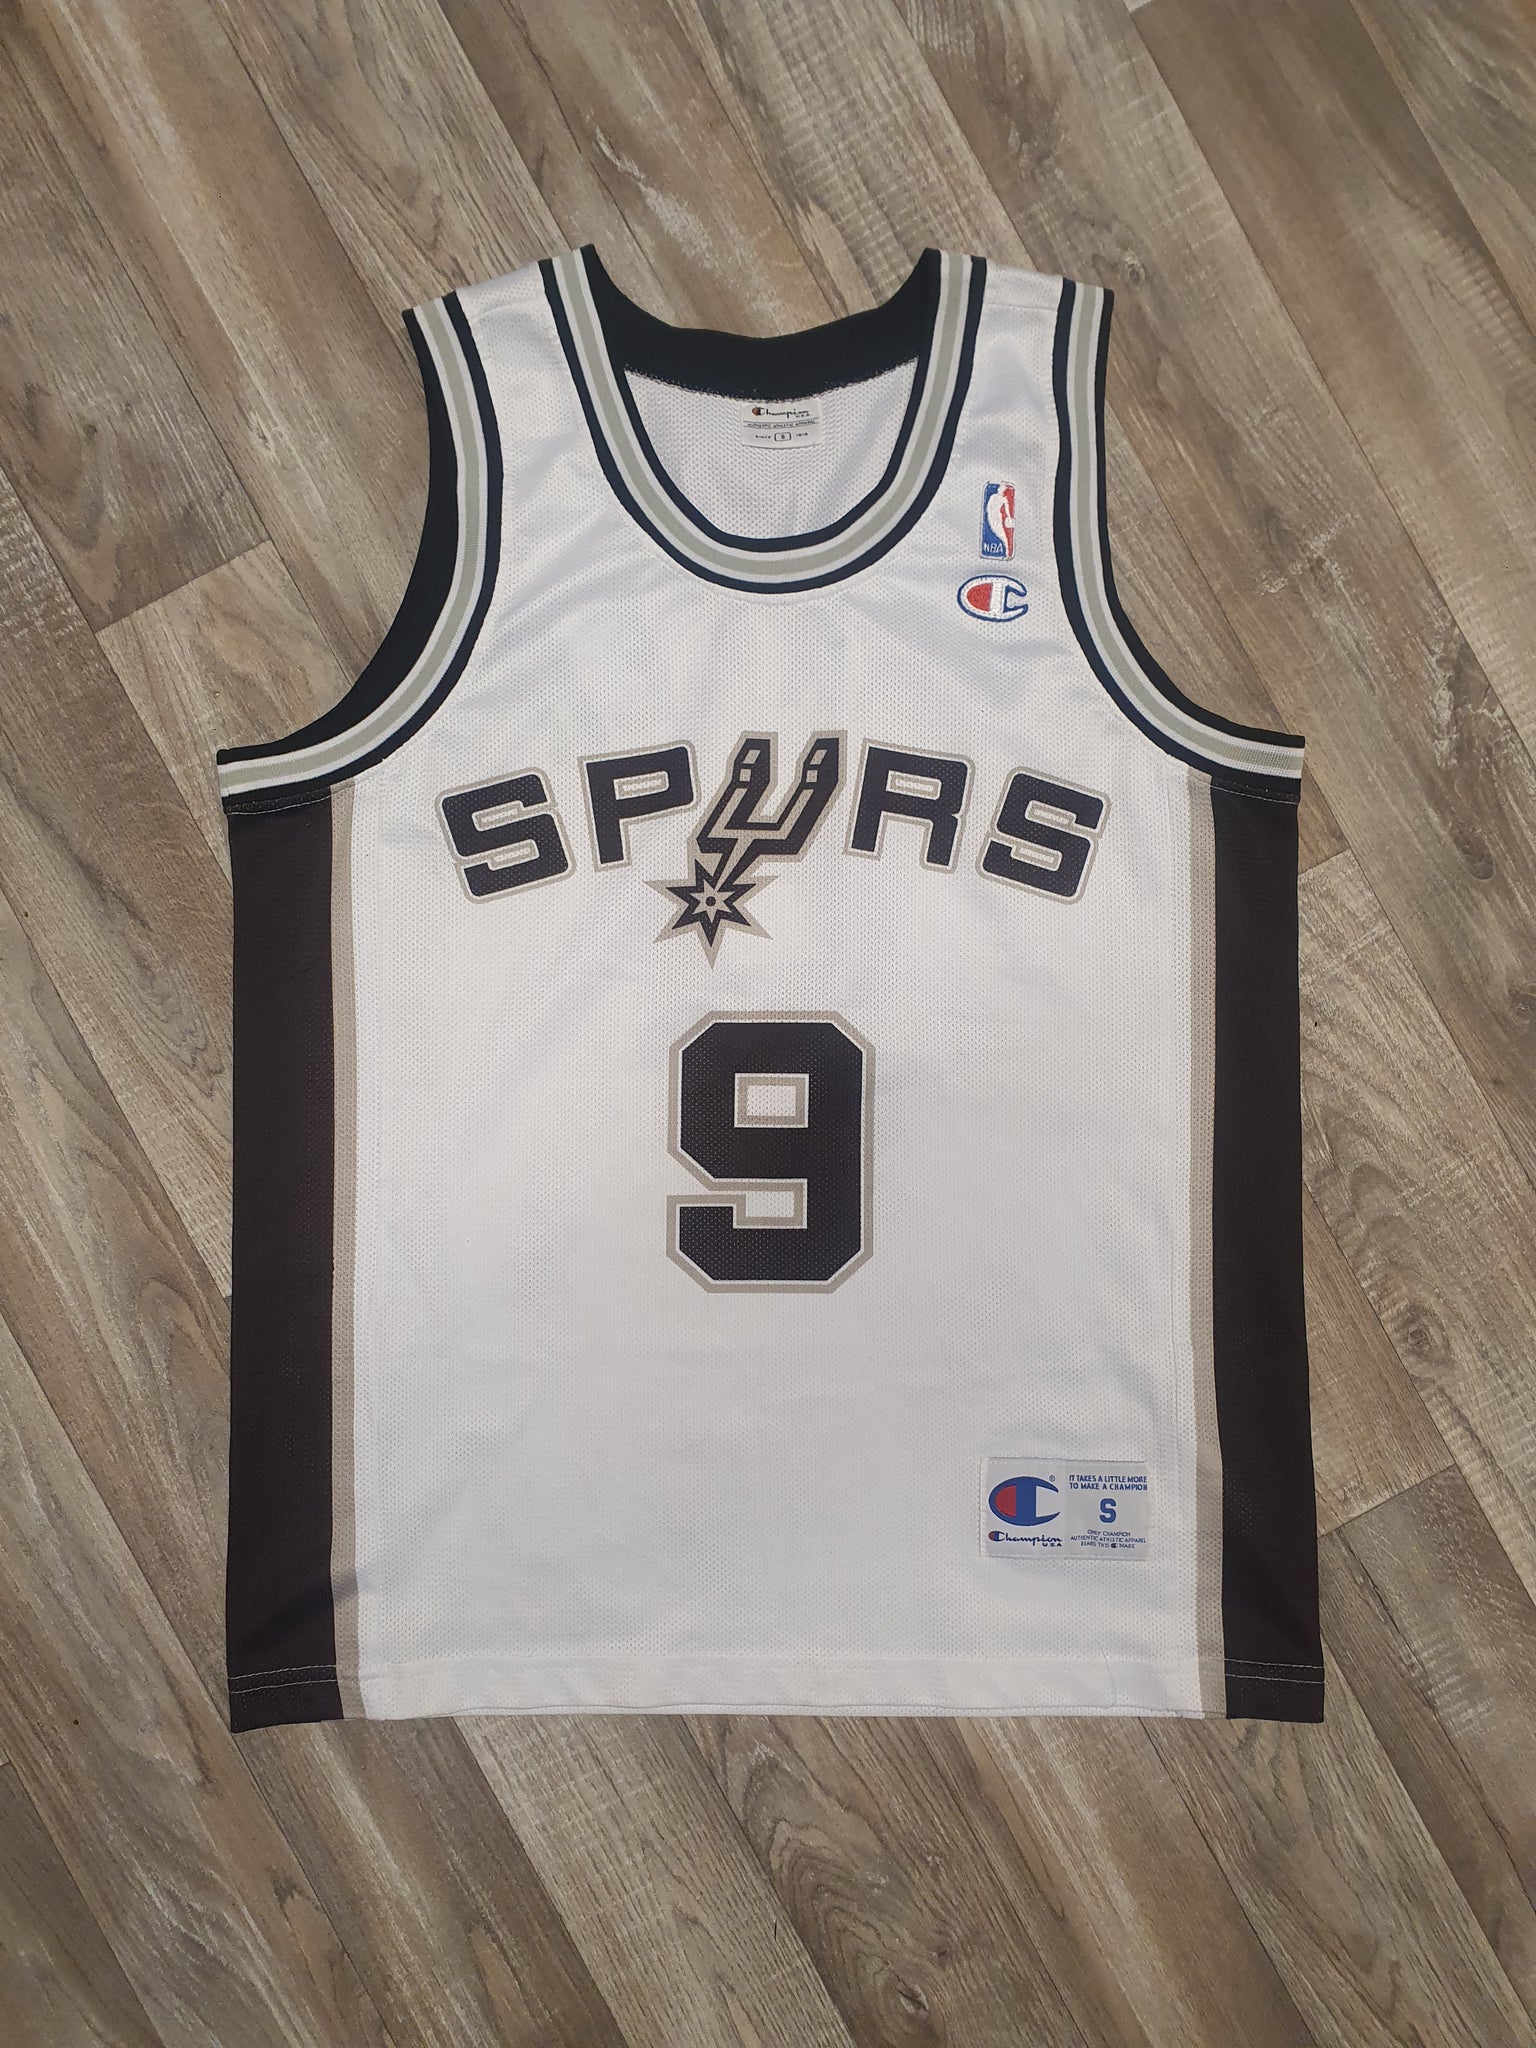 NBA San Antonio Spurs Champion jersey shirt black size S